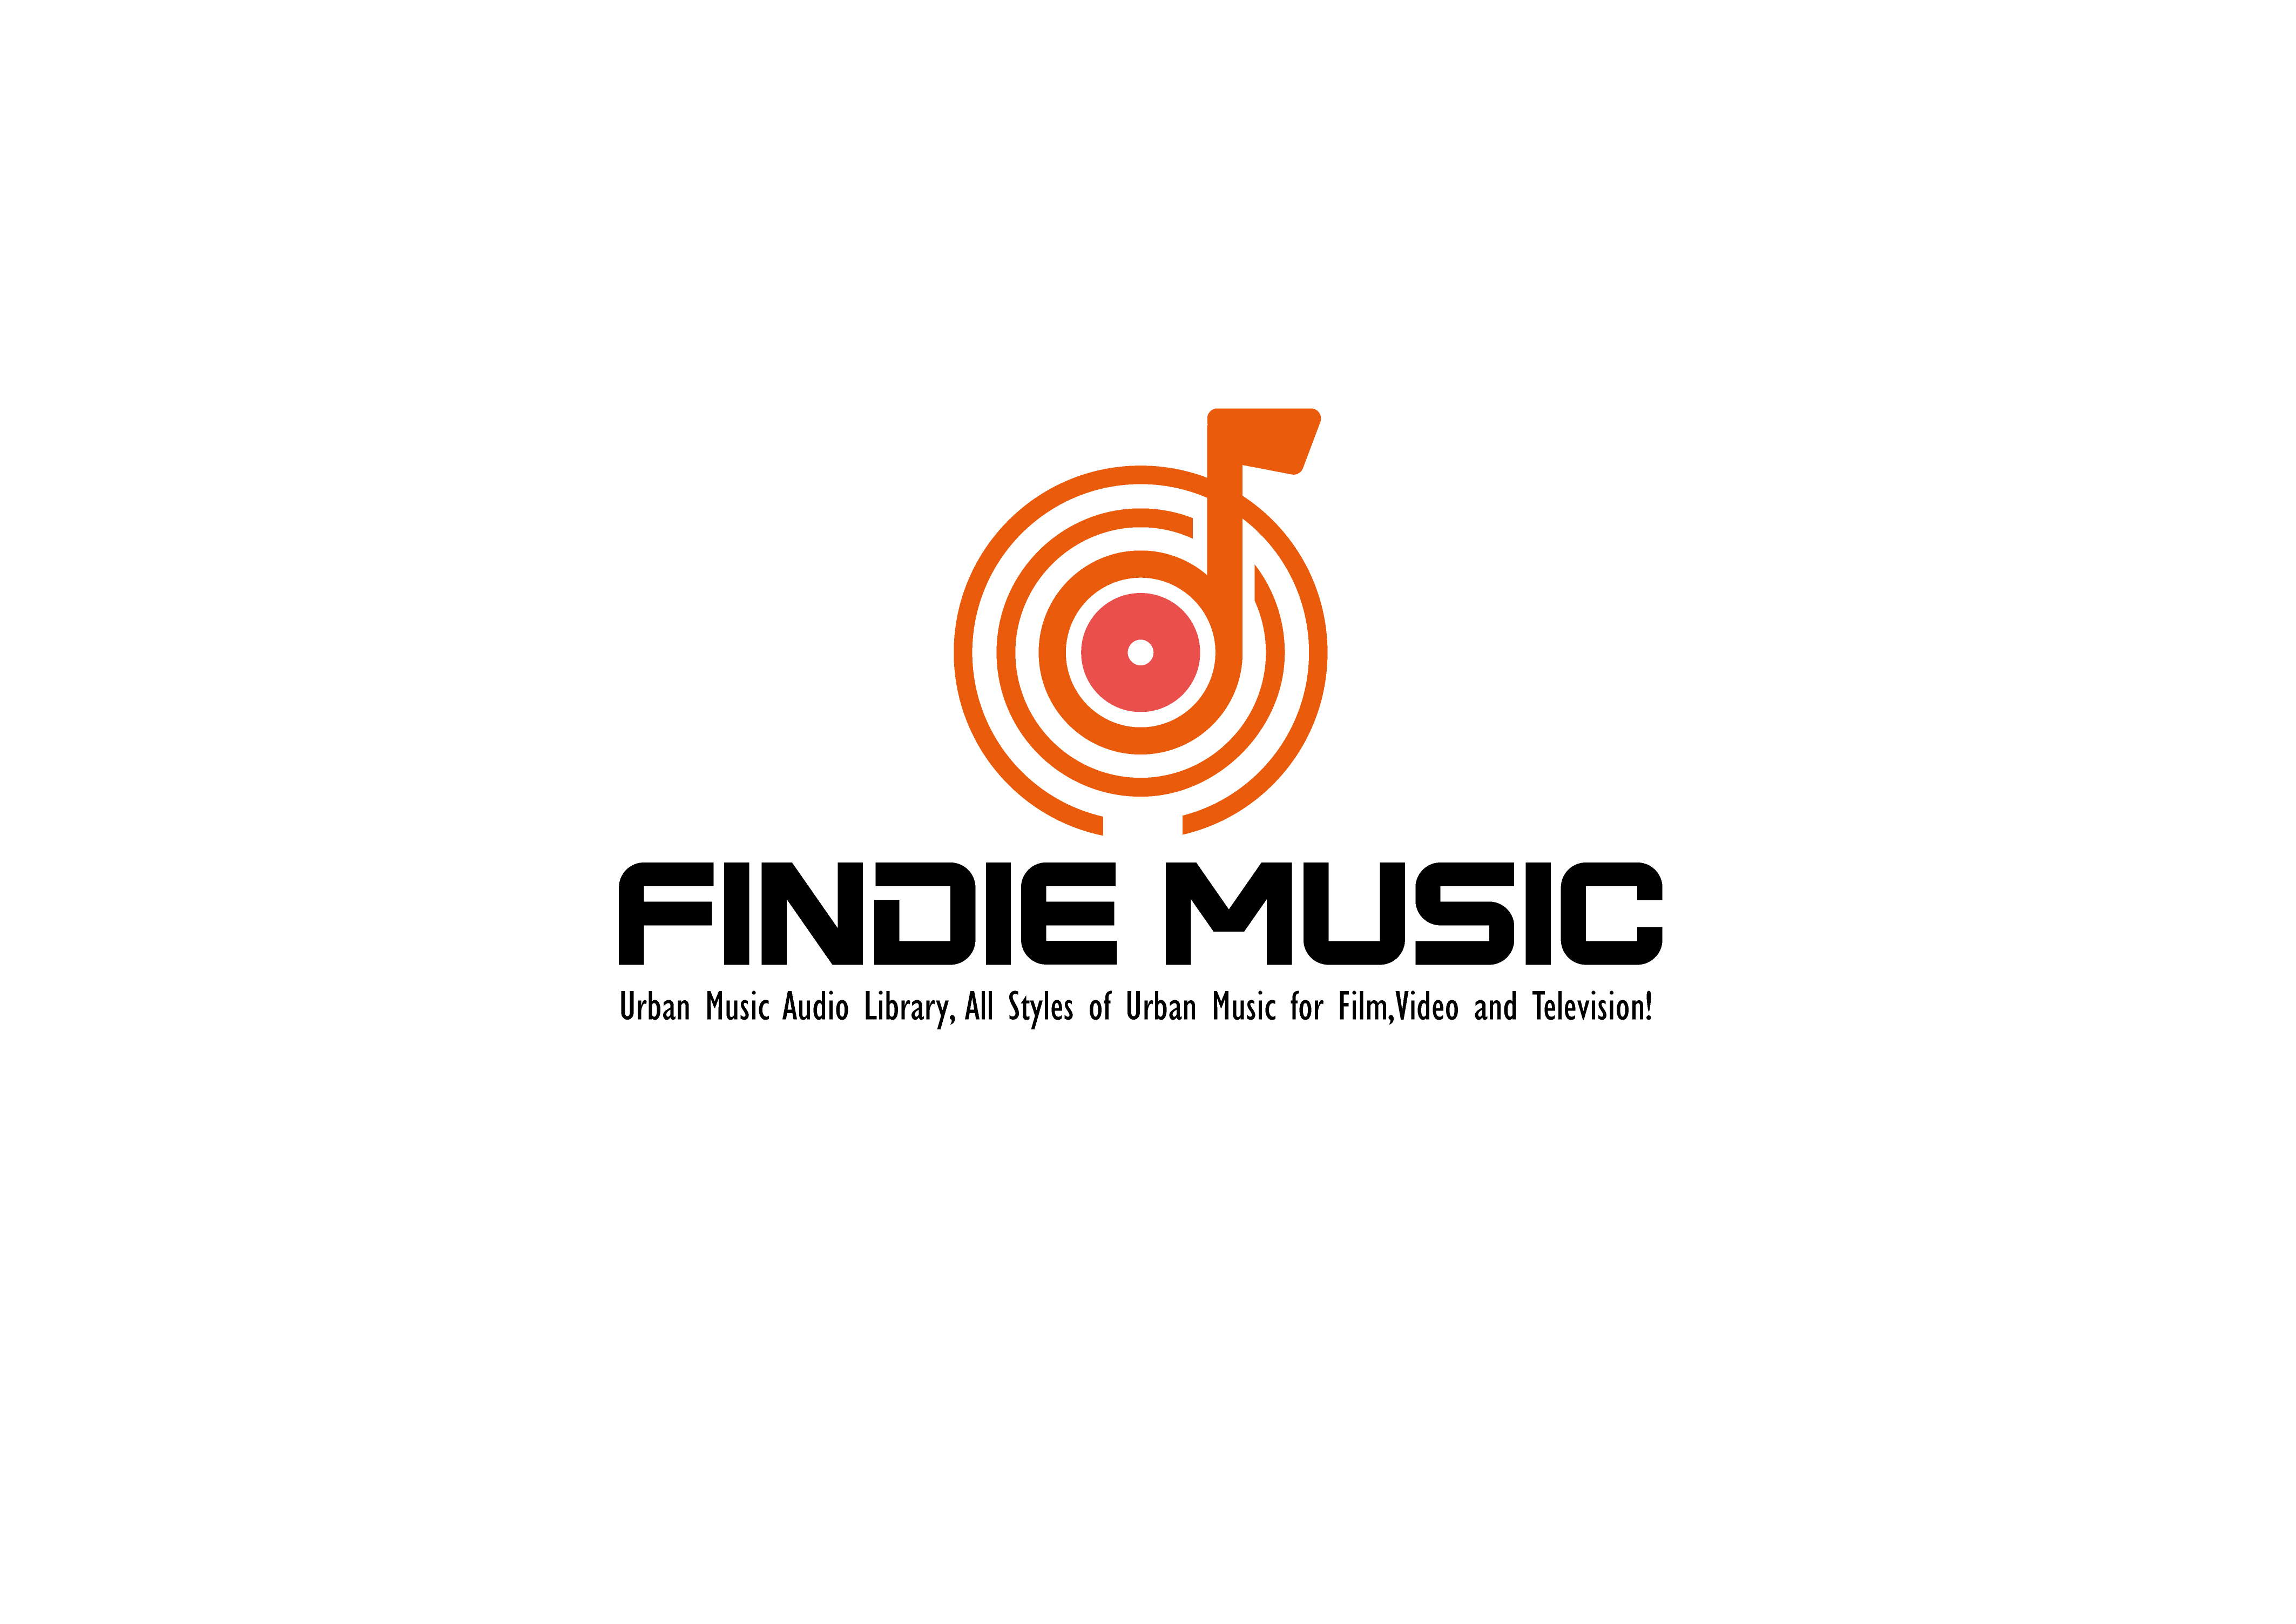 Findie Music